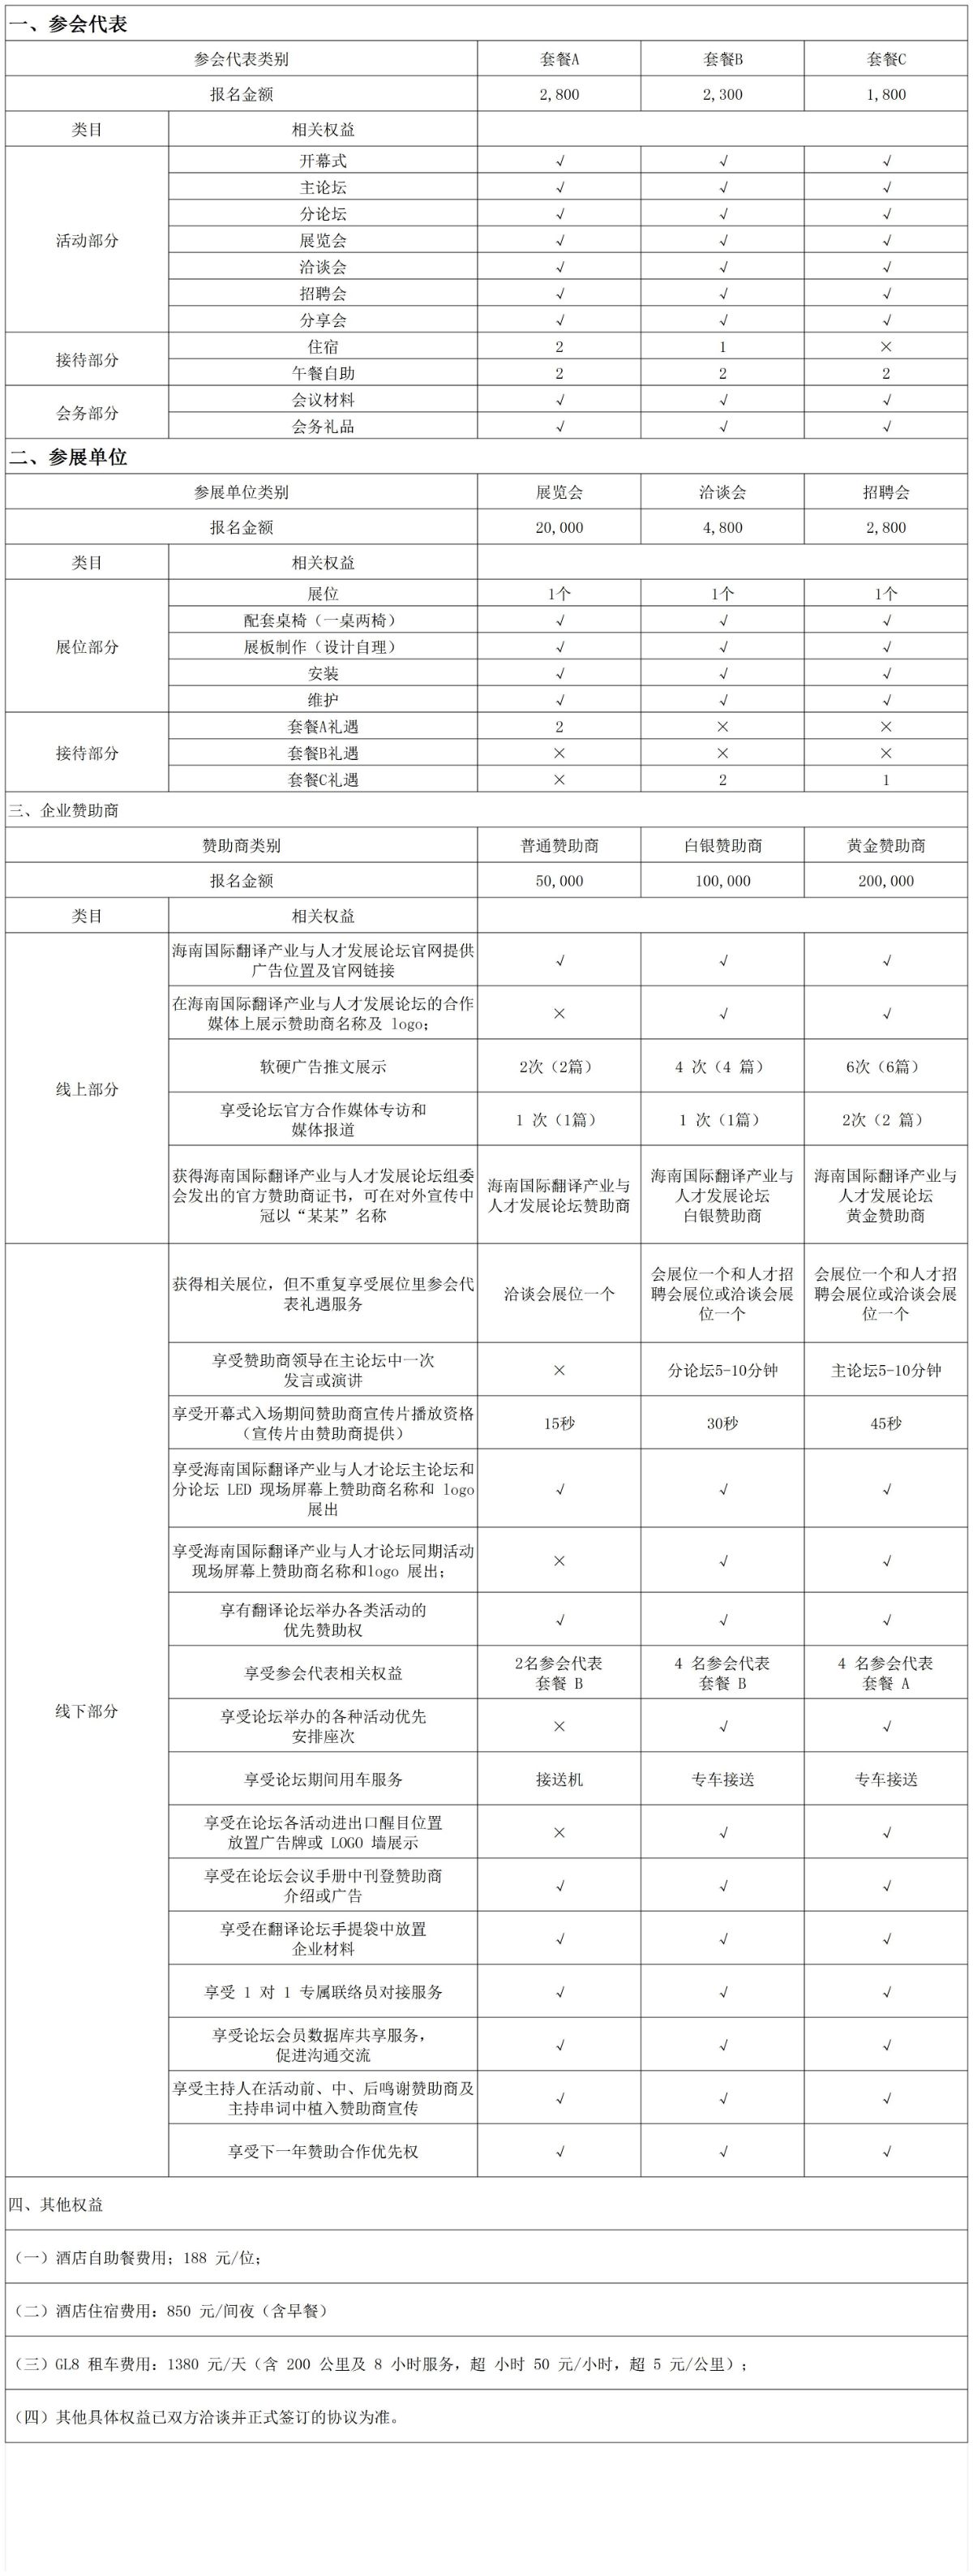 8.18招商权益方案一览表_Sheet1